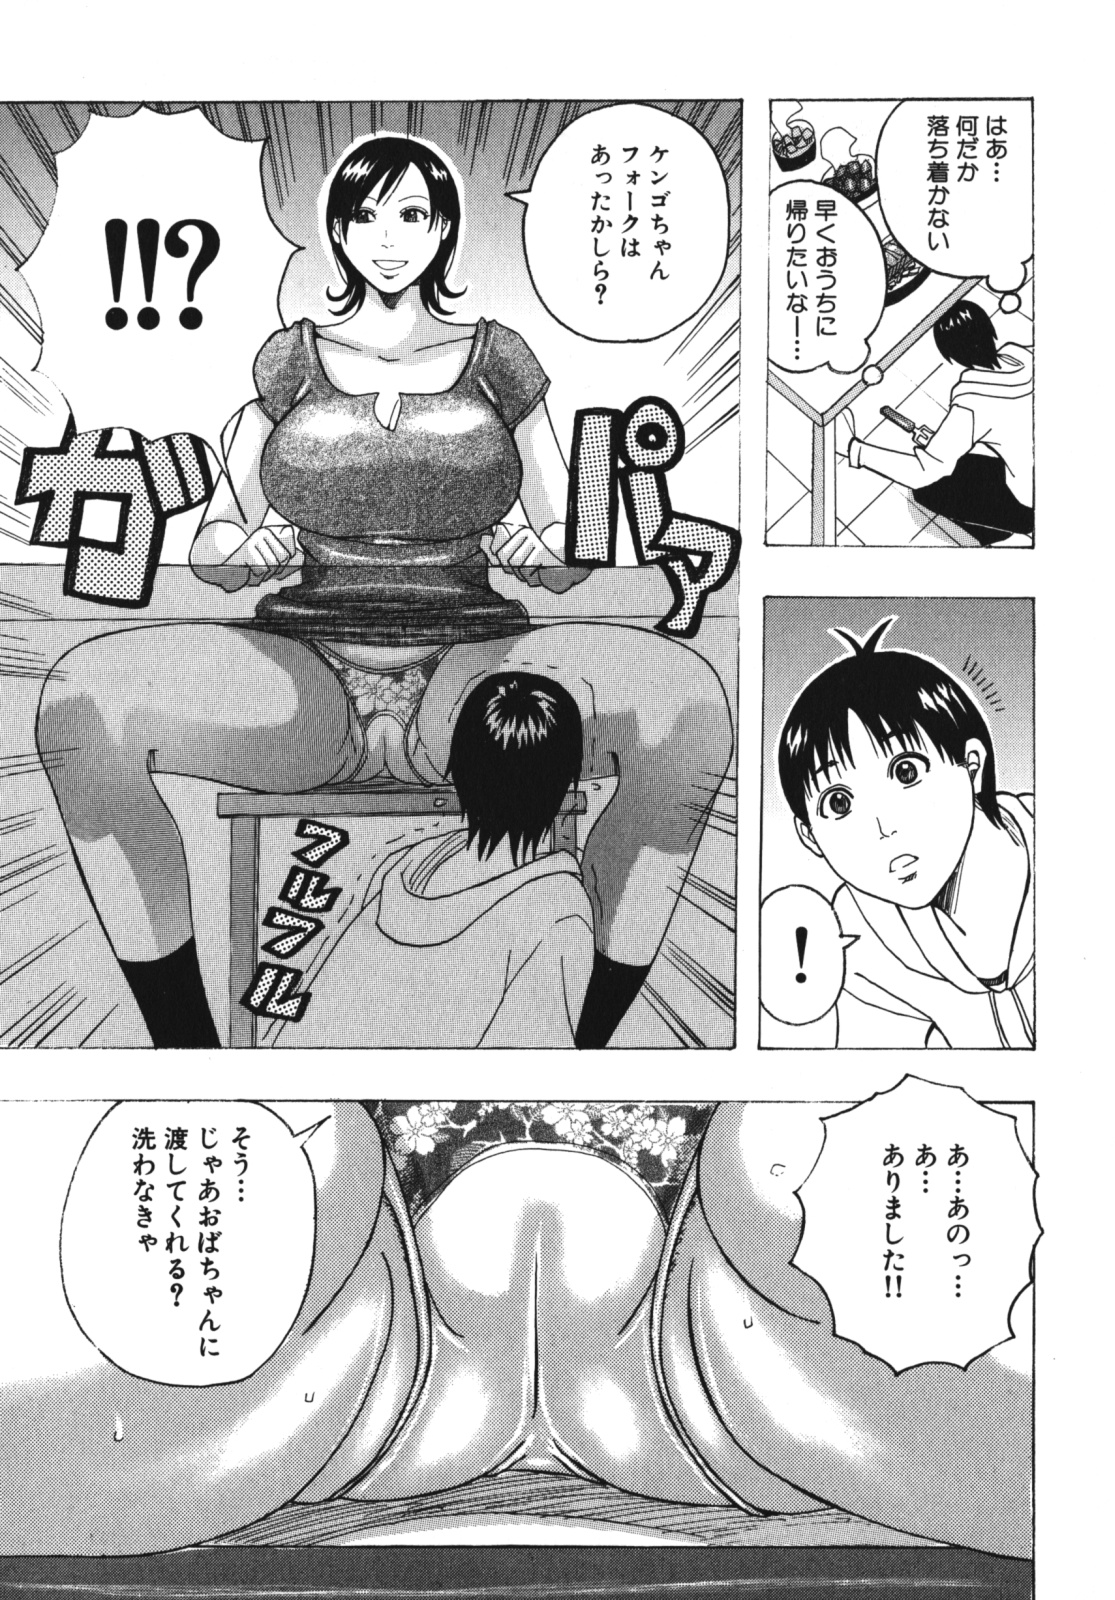 [Anthology] Geki Yaba Vol.4 - Namade Shitene page 48 full